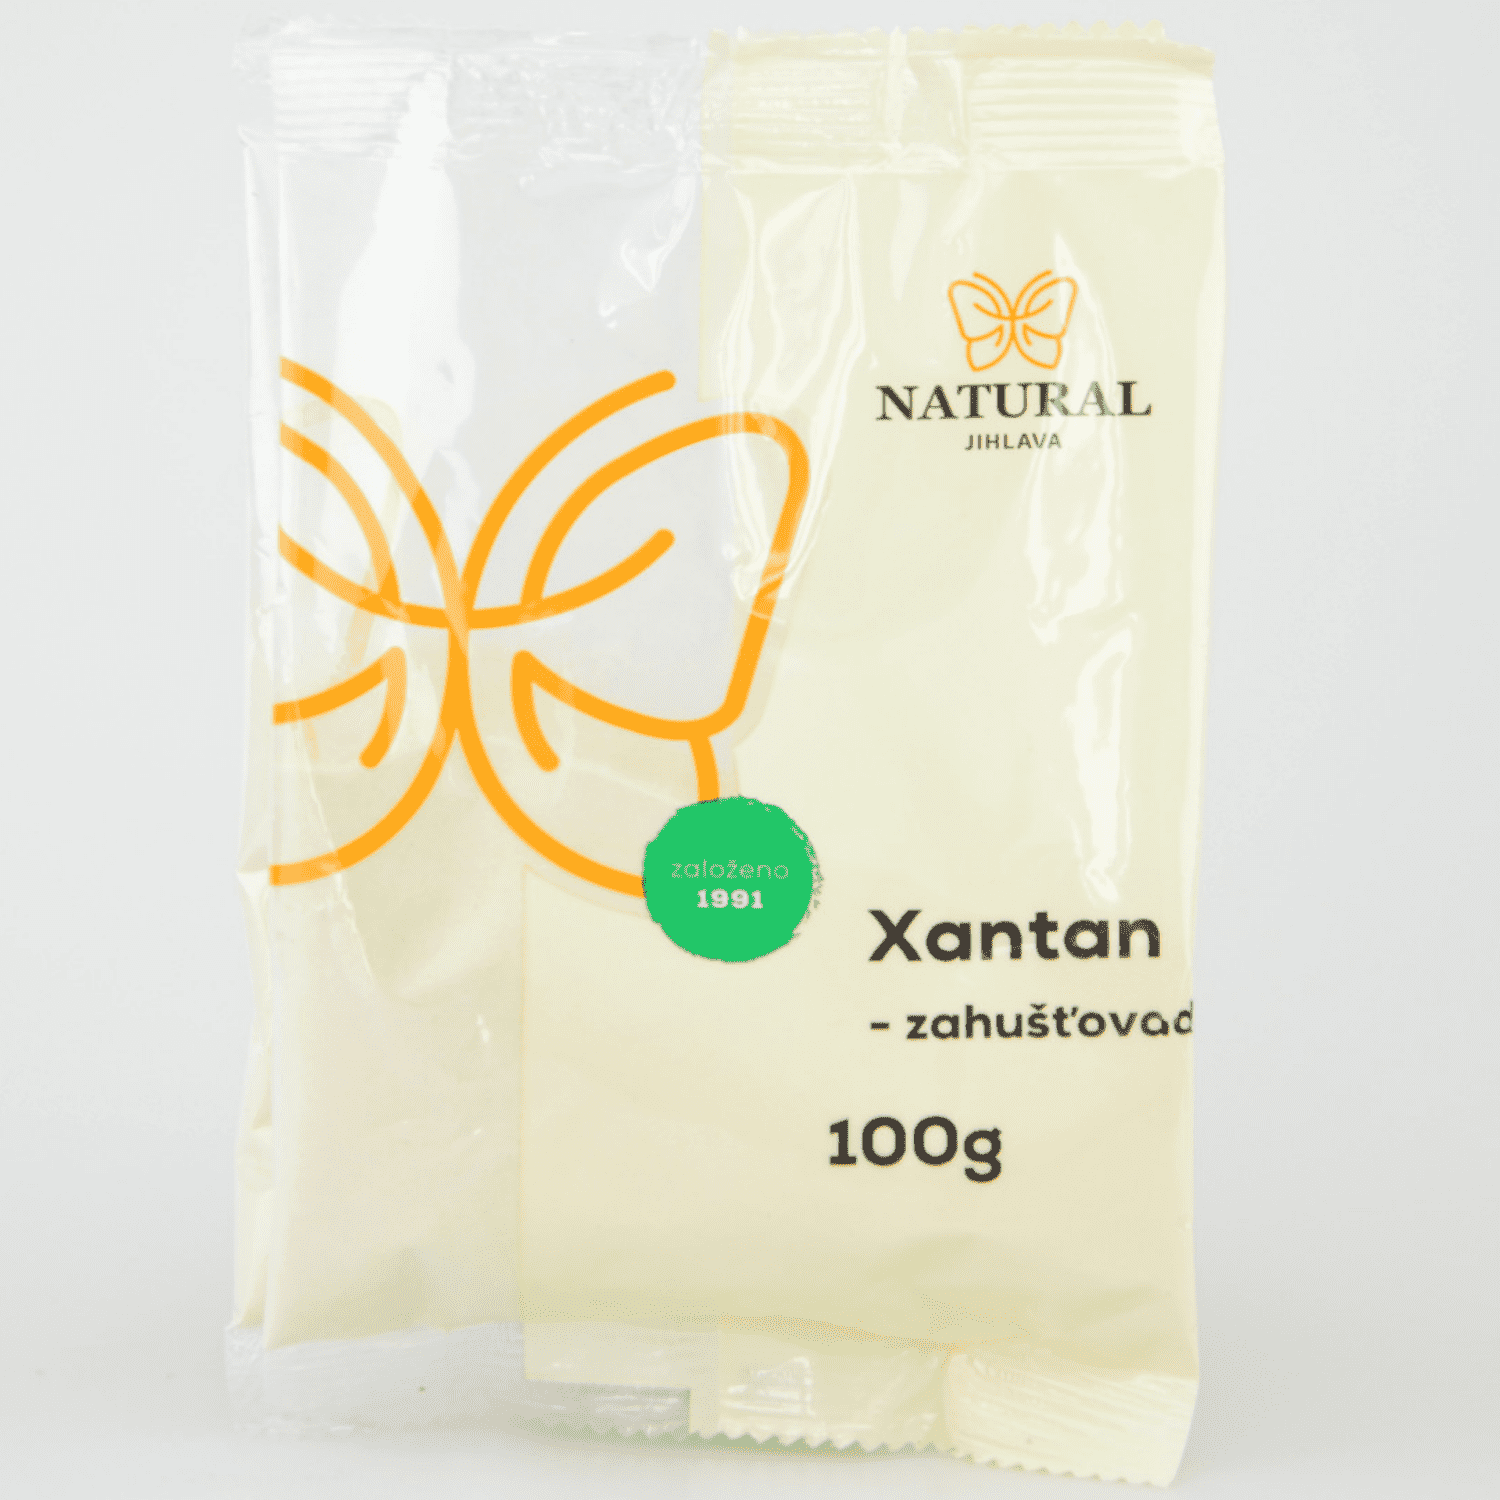 Xantan - natural (100g)